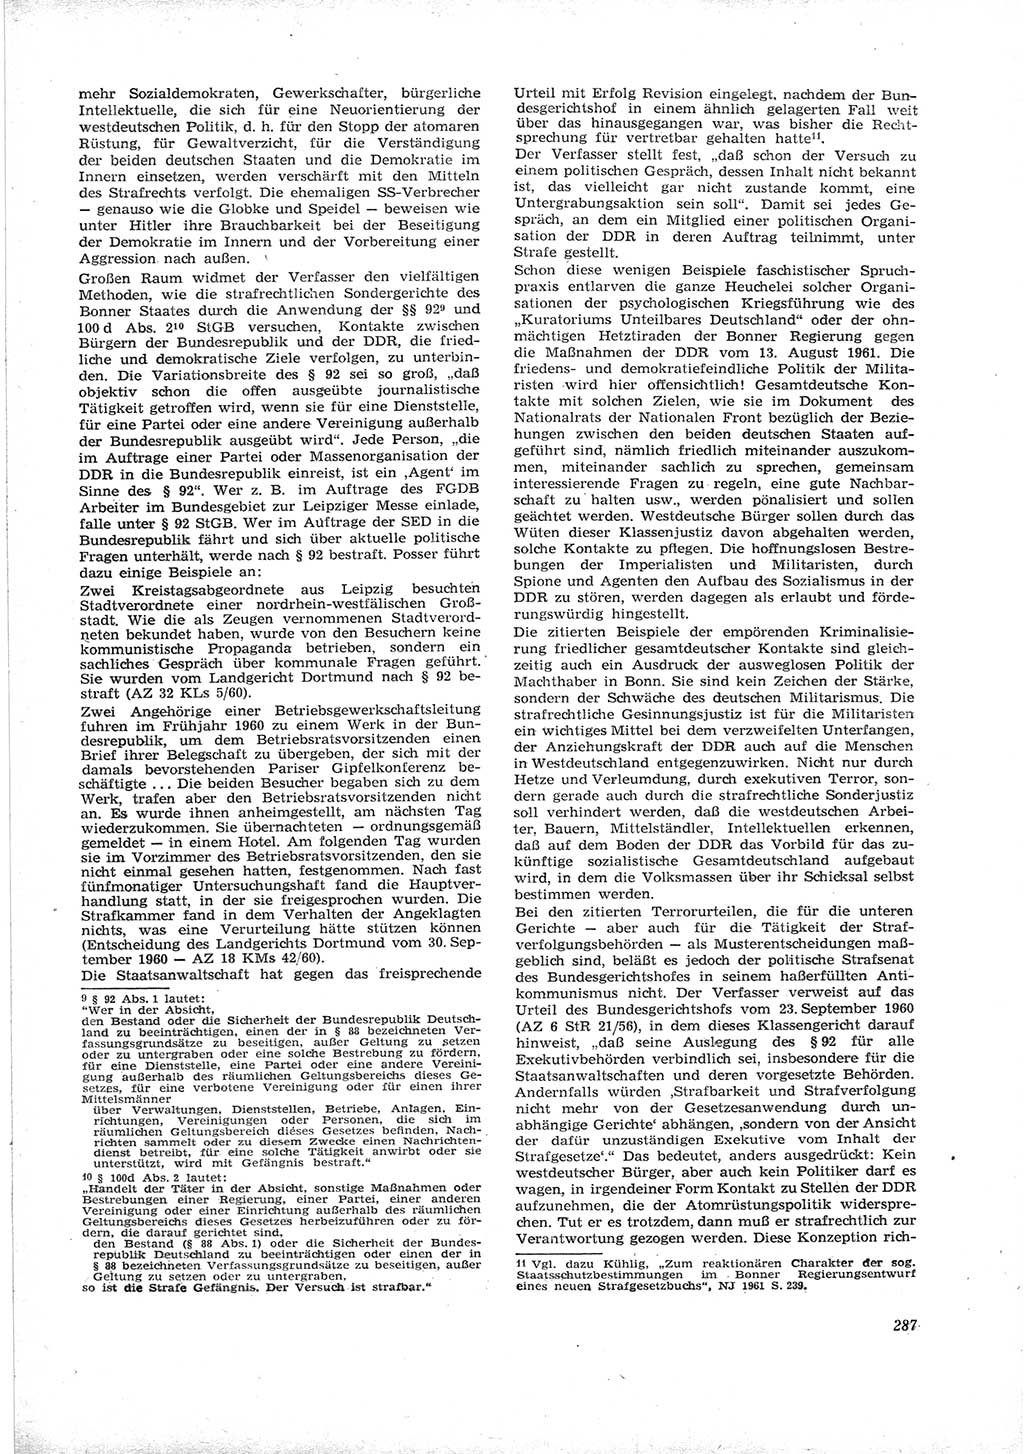 Neue Justiz (NJ), Zeitschrift für Recht und Rechtswissenschaft [Deutsche Demokratische Republik (DDR)], 16. Jahrgang 1962, Seite 287 (NJ DDR 1962, S. 287)